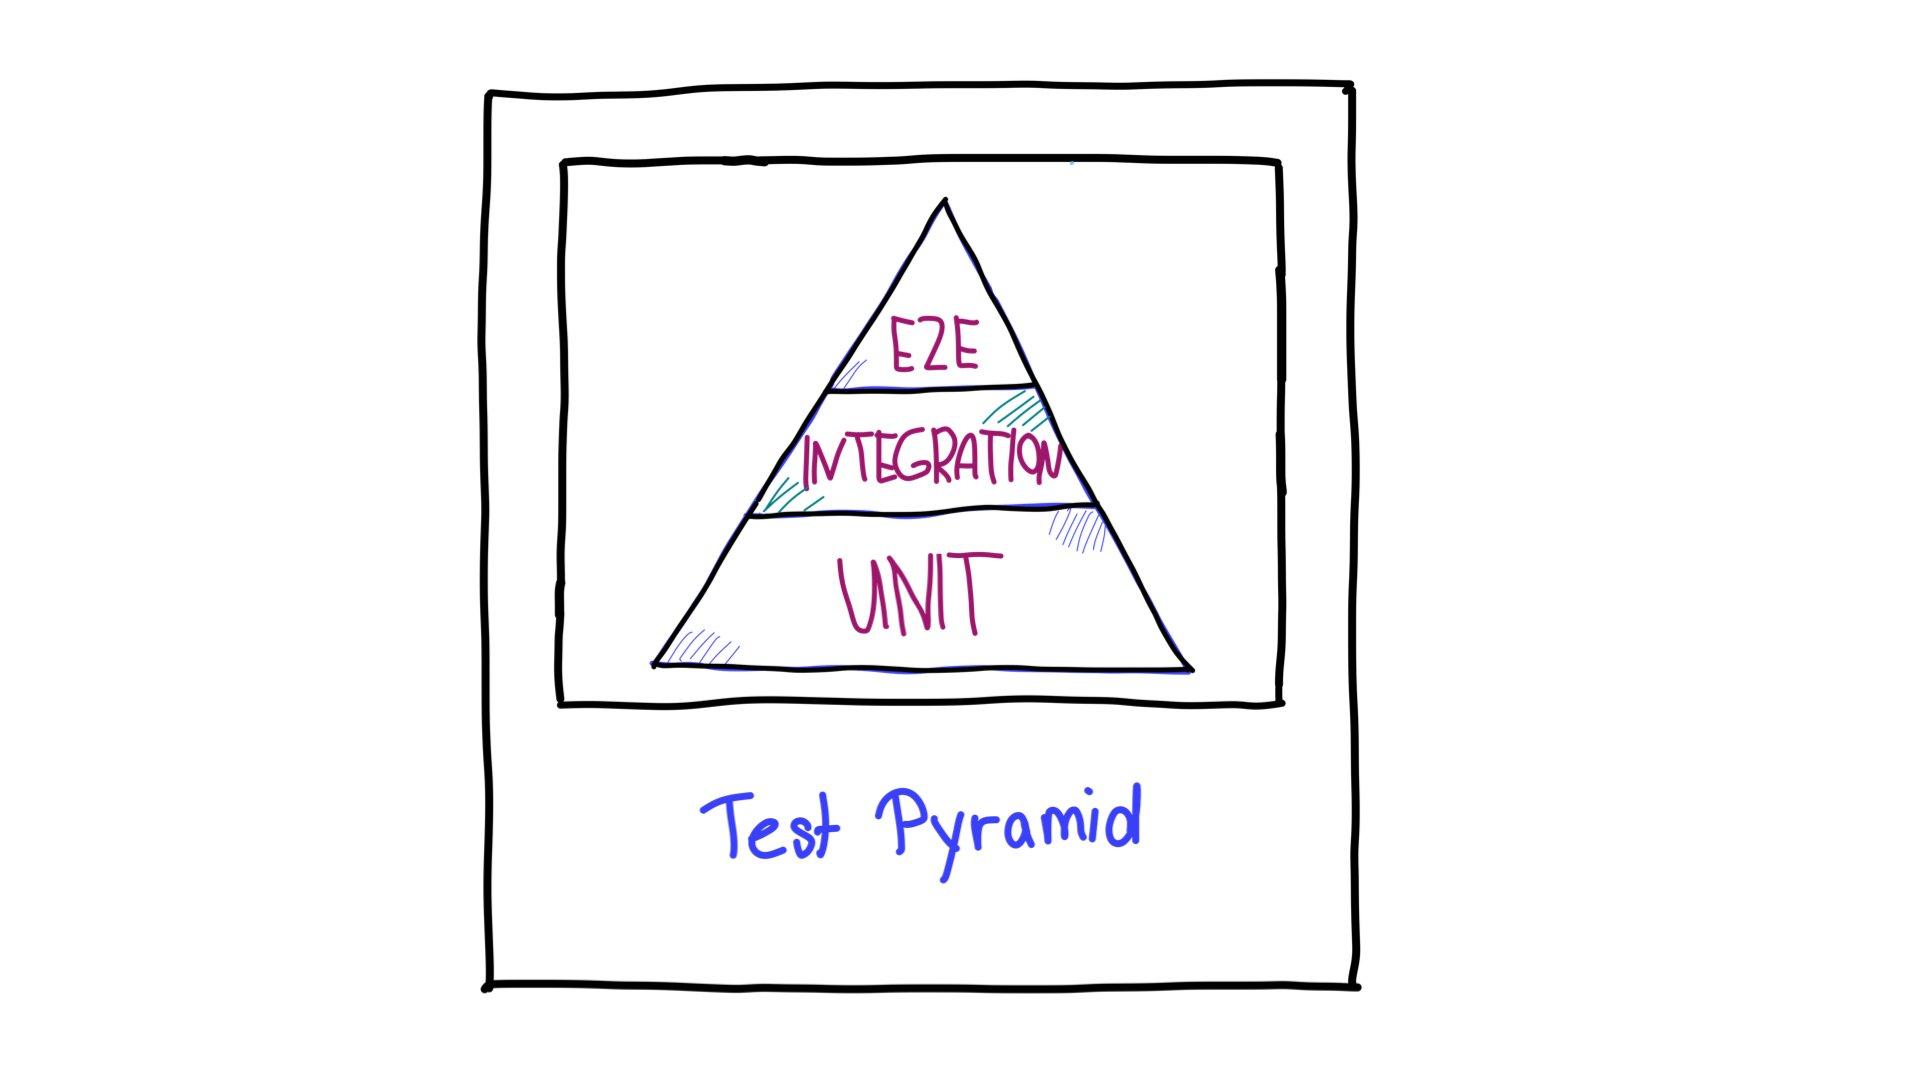 テストピラミッド。上部にエンドツーエンド（E2E）テスト、中央に統合テスト、下部に単体テストがあります。